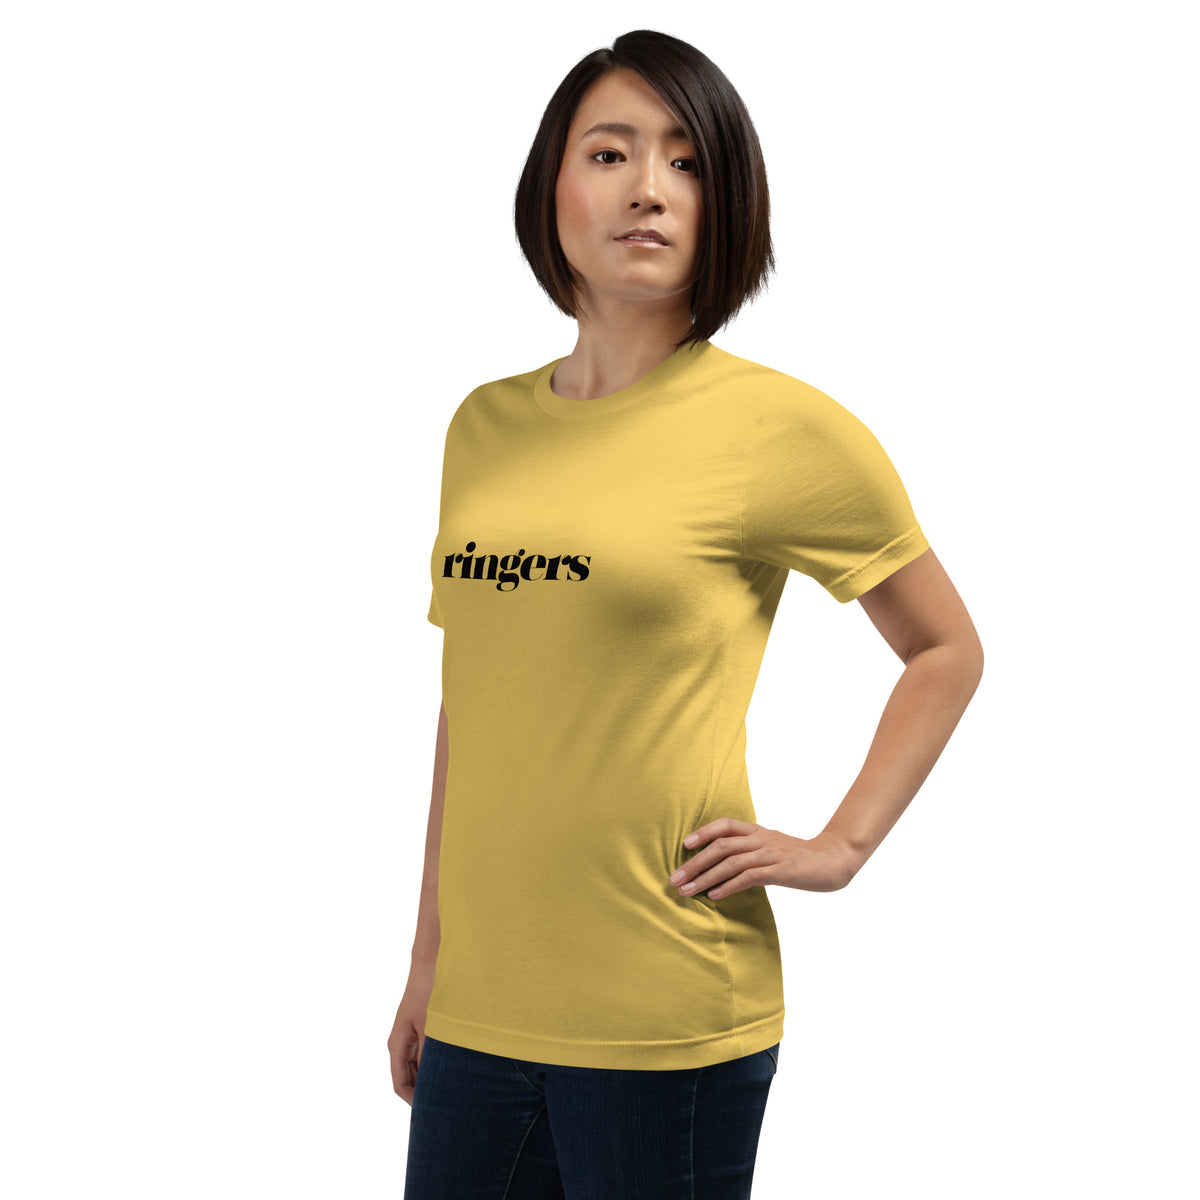 Ringers | Unisex t-shirt